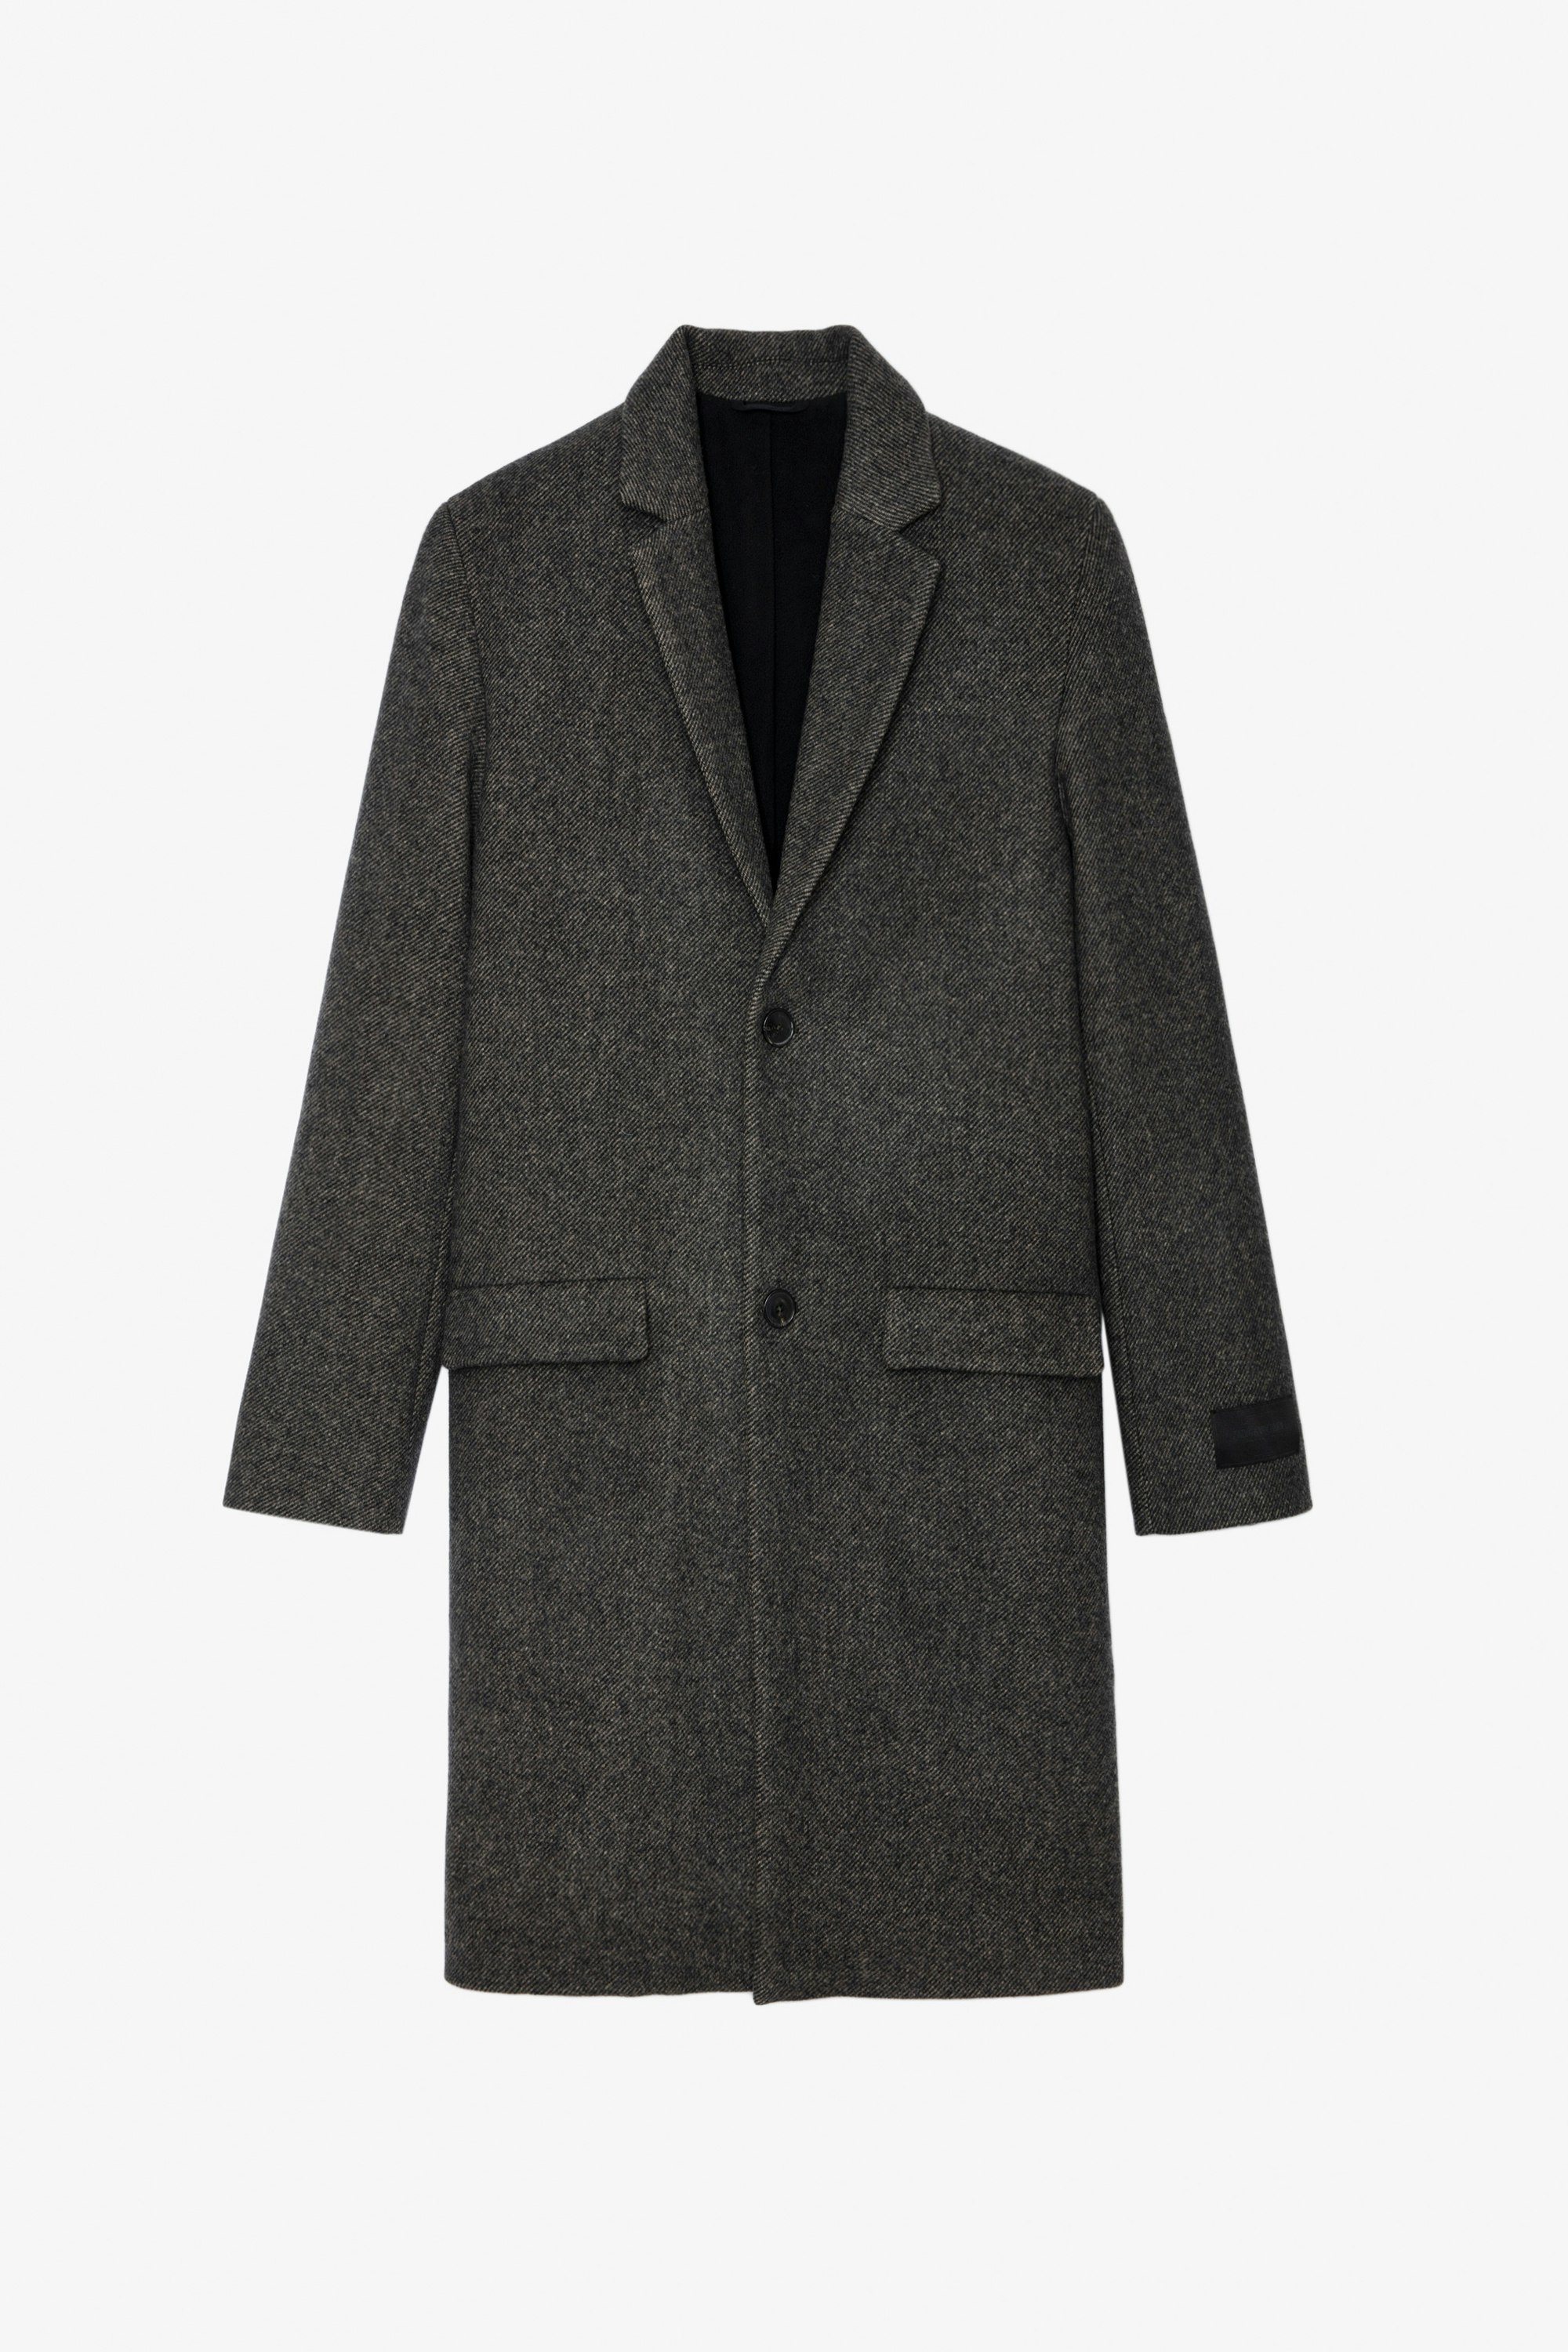 Mark Coat - Unisex's midi coat in anthracite herringbone wool with contrasting undercollar featuring the slogan “C’est la faute à Voltaire”.